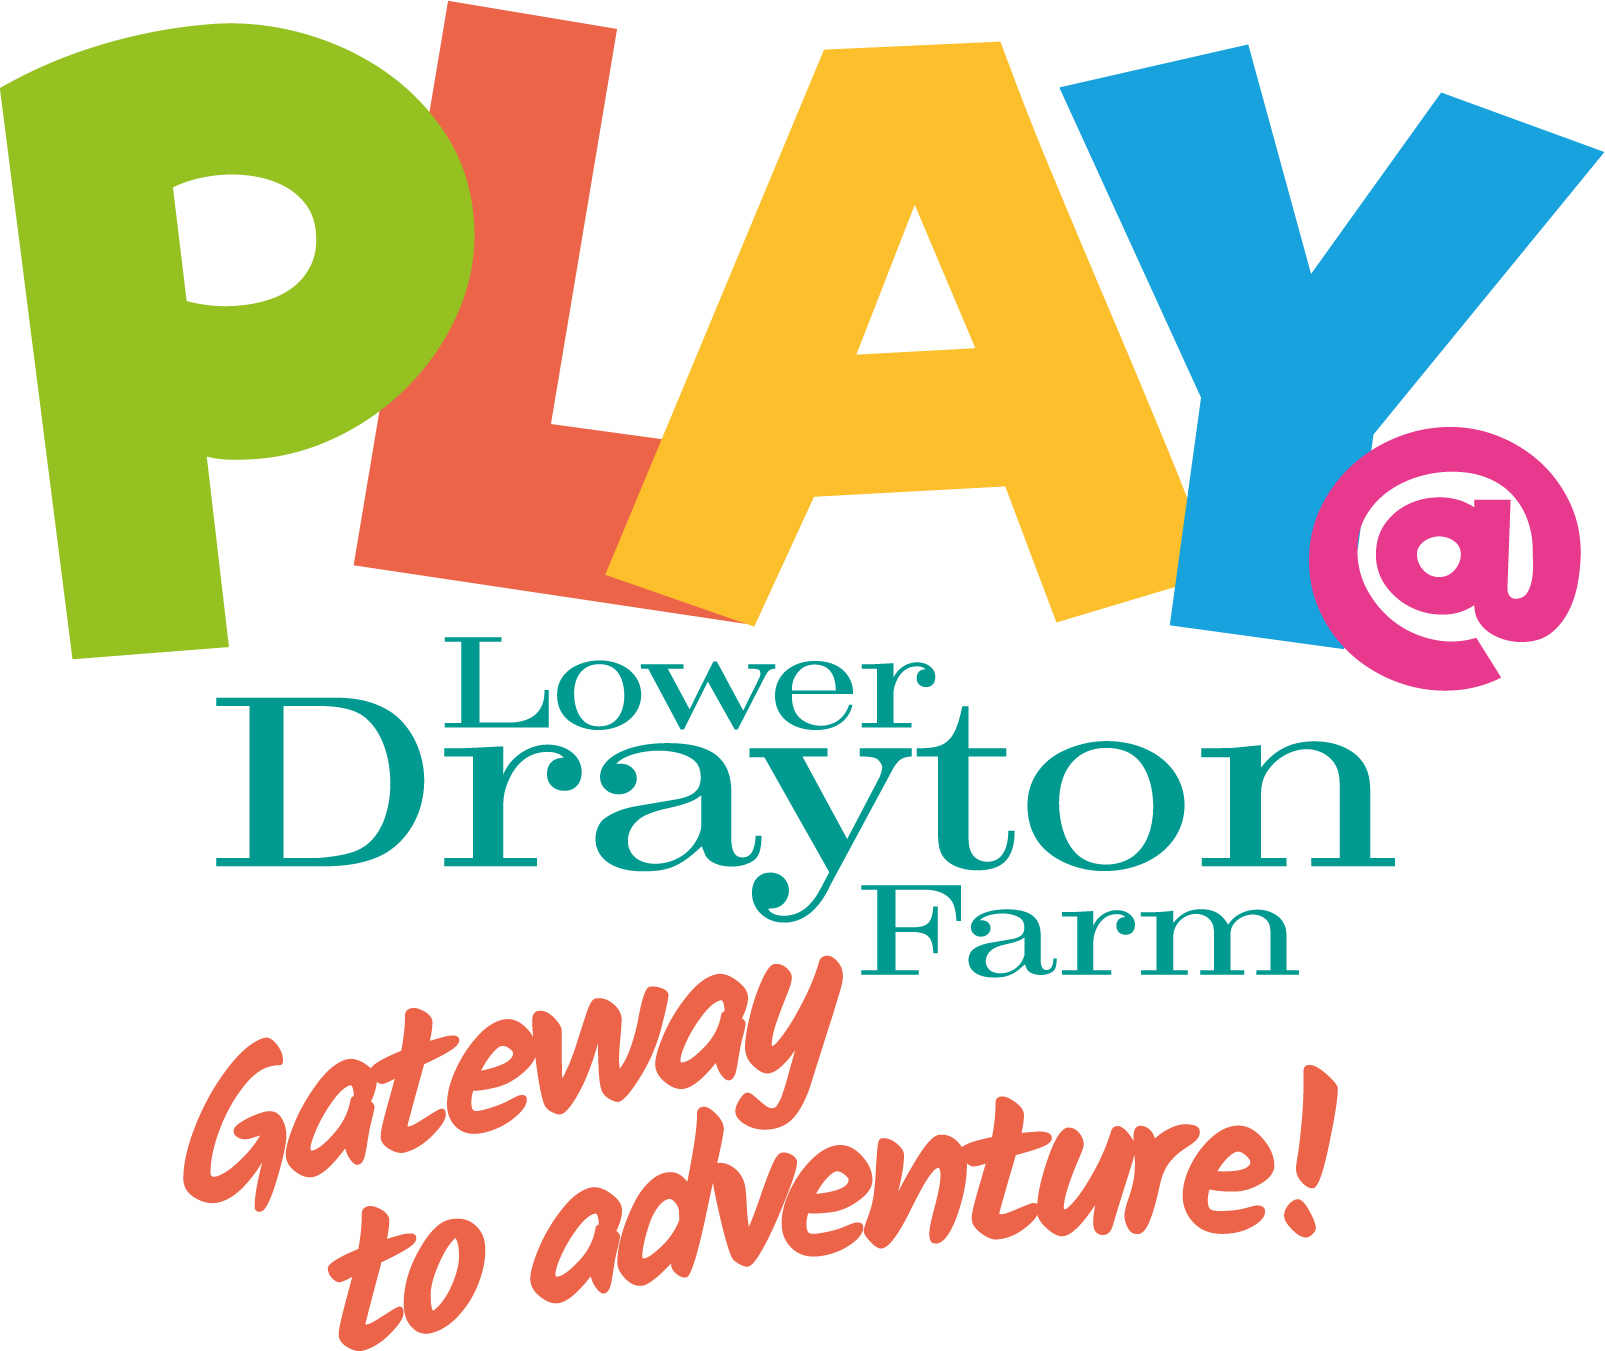 Play@ Lower Drayton Farm